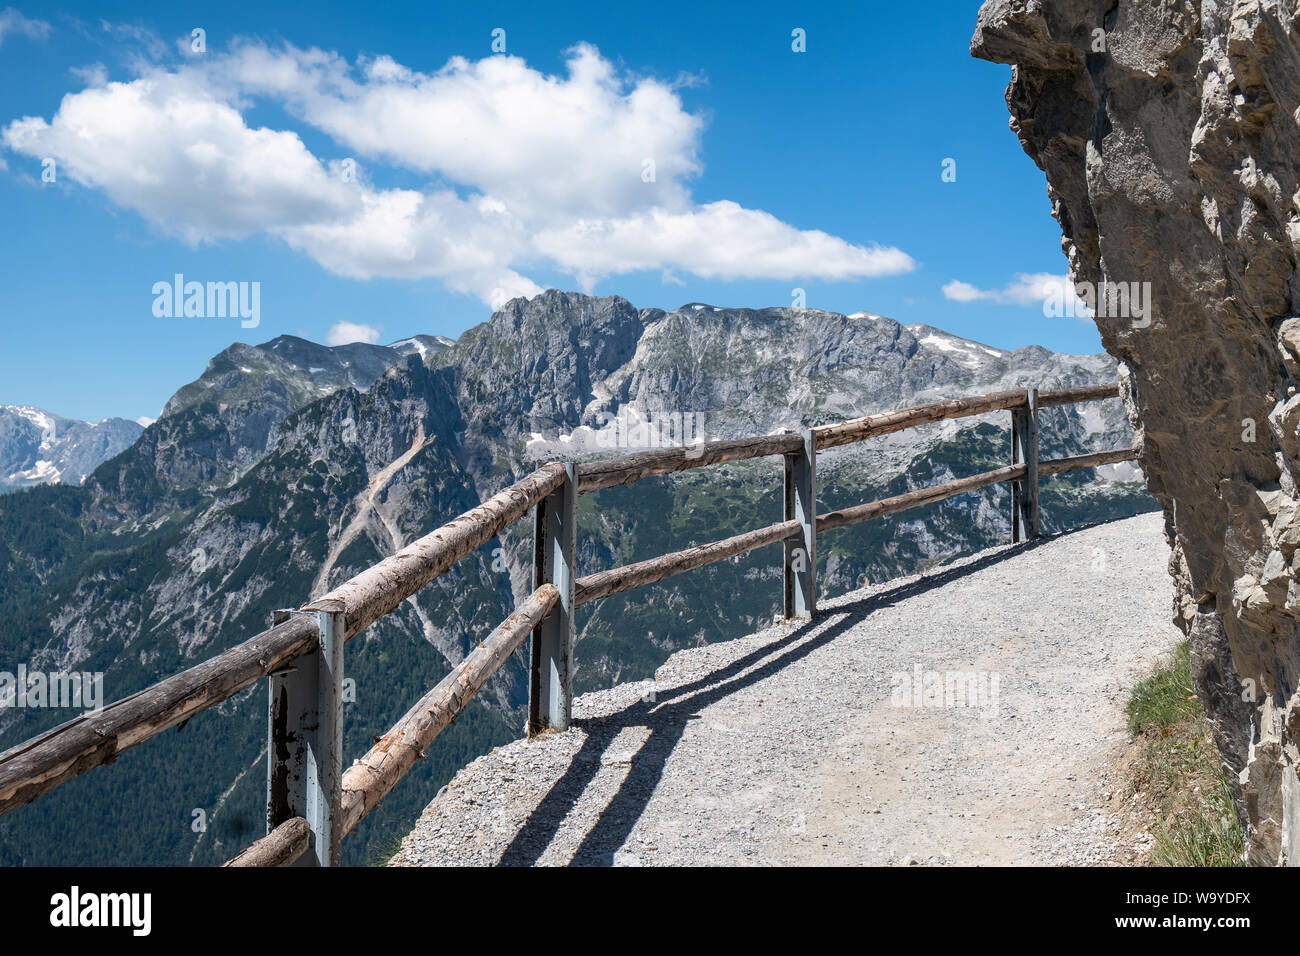 Paysage de montagne avec des pics de neige et le Sentier lumineux au jour d'été ensoleillé dans les Alpes, Autriche Banque D'Images